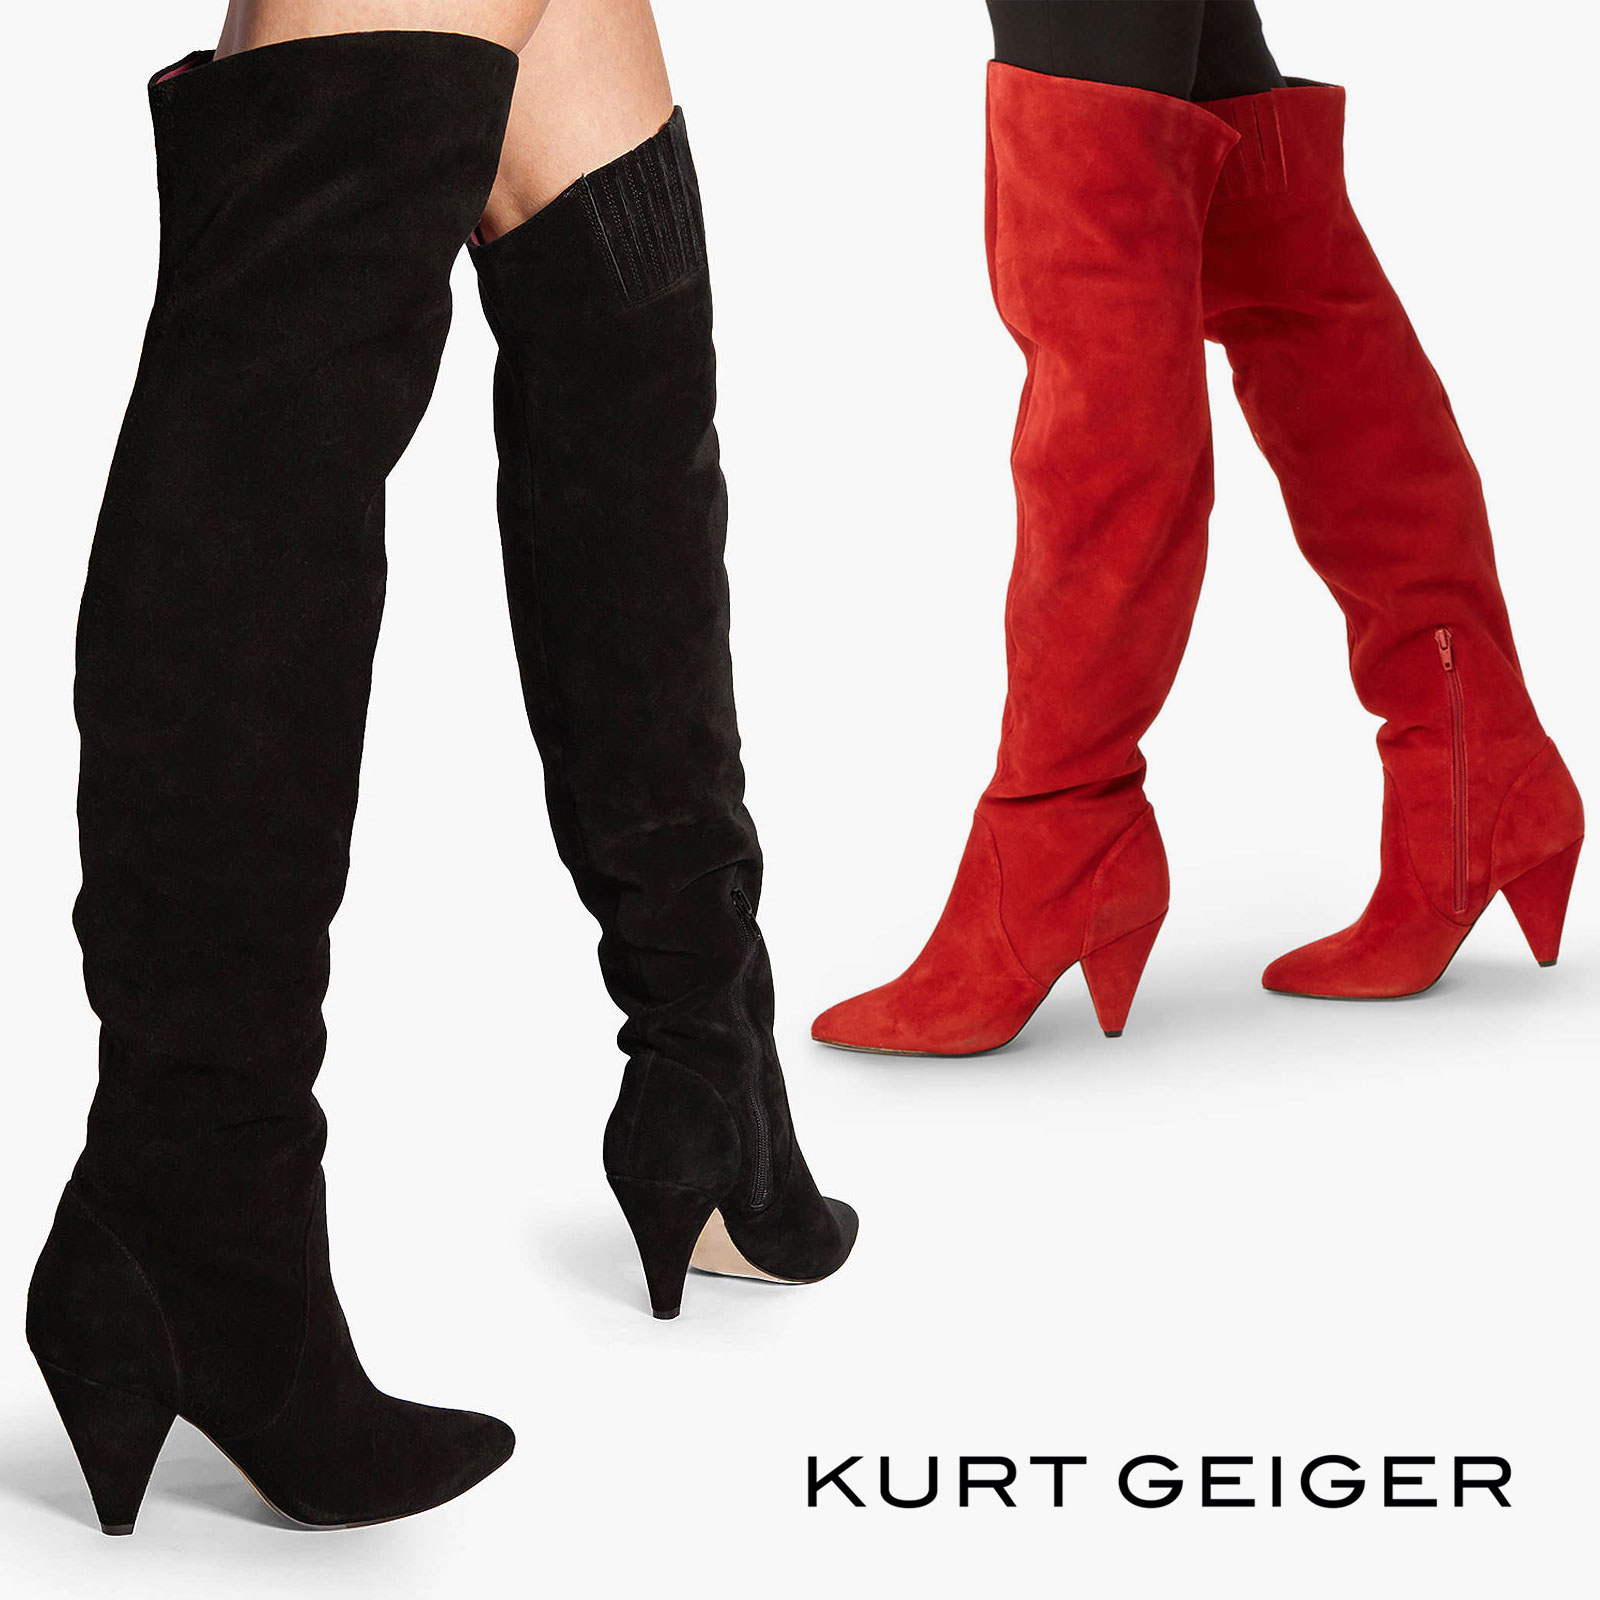 kurt geiger knee high boots